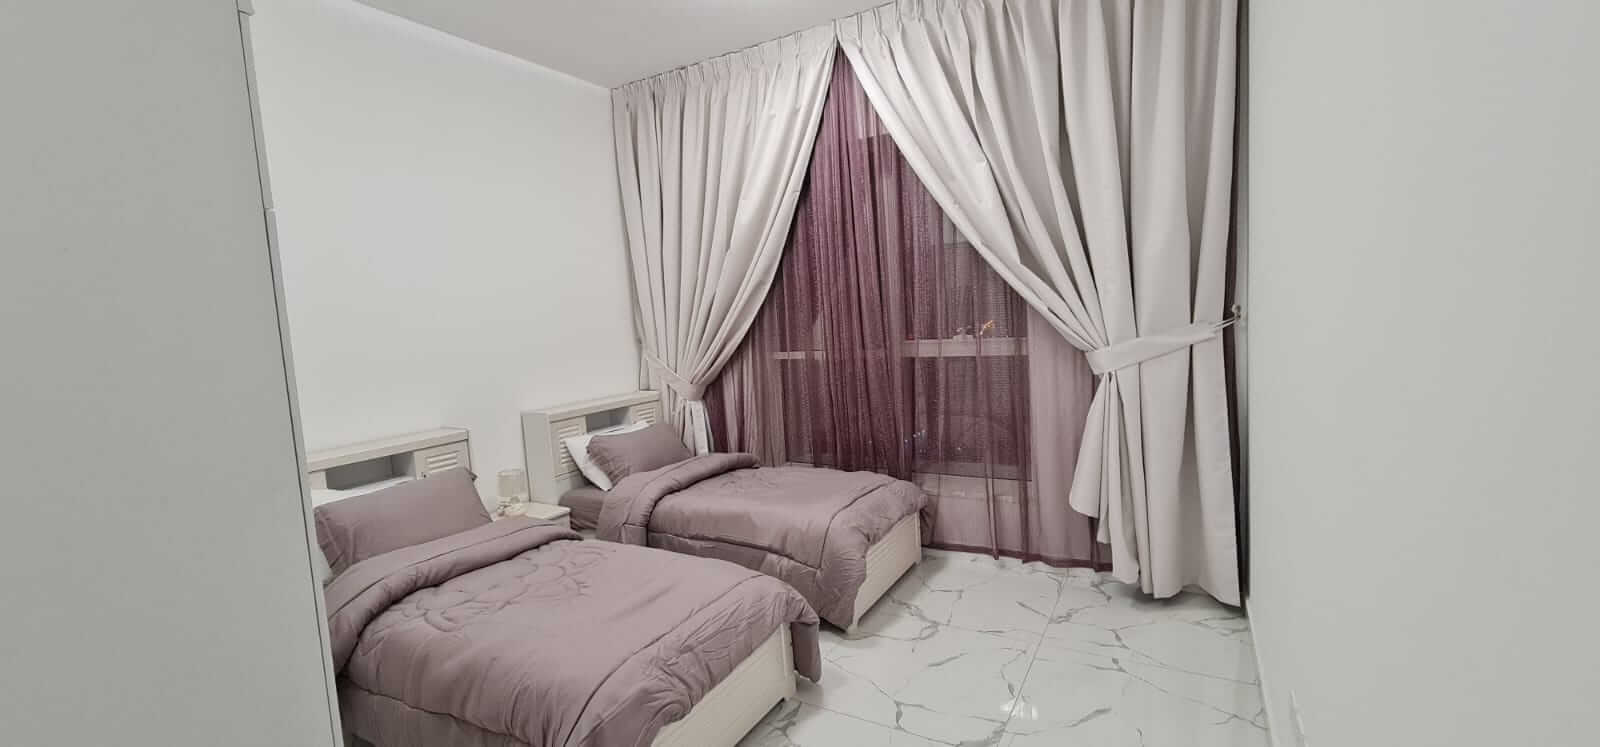 شقة 3 غرفة وصالة للإيجار في عجمان